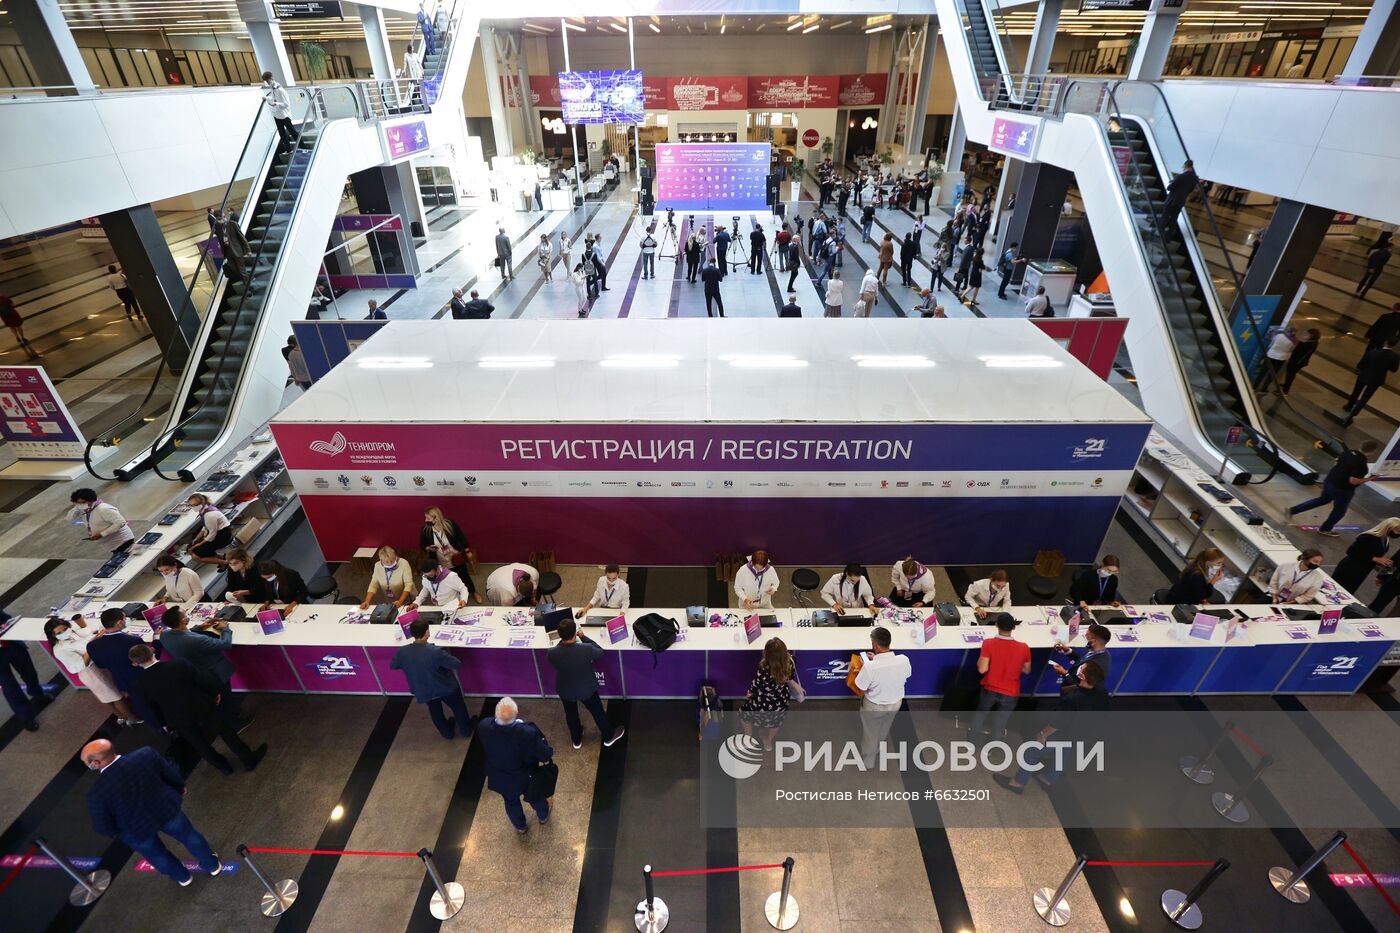 Международный форум "Технопром-2021" в Новосибирске